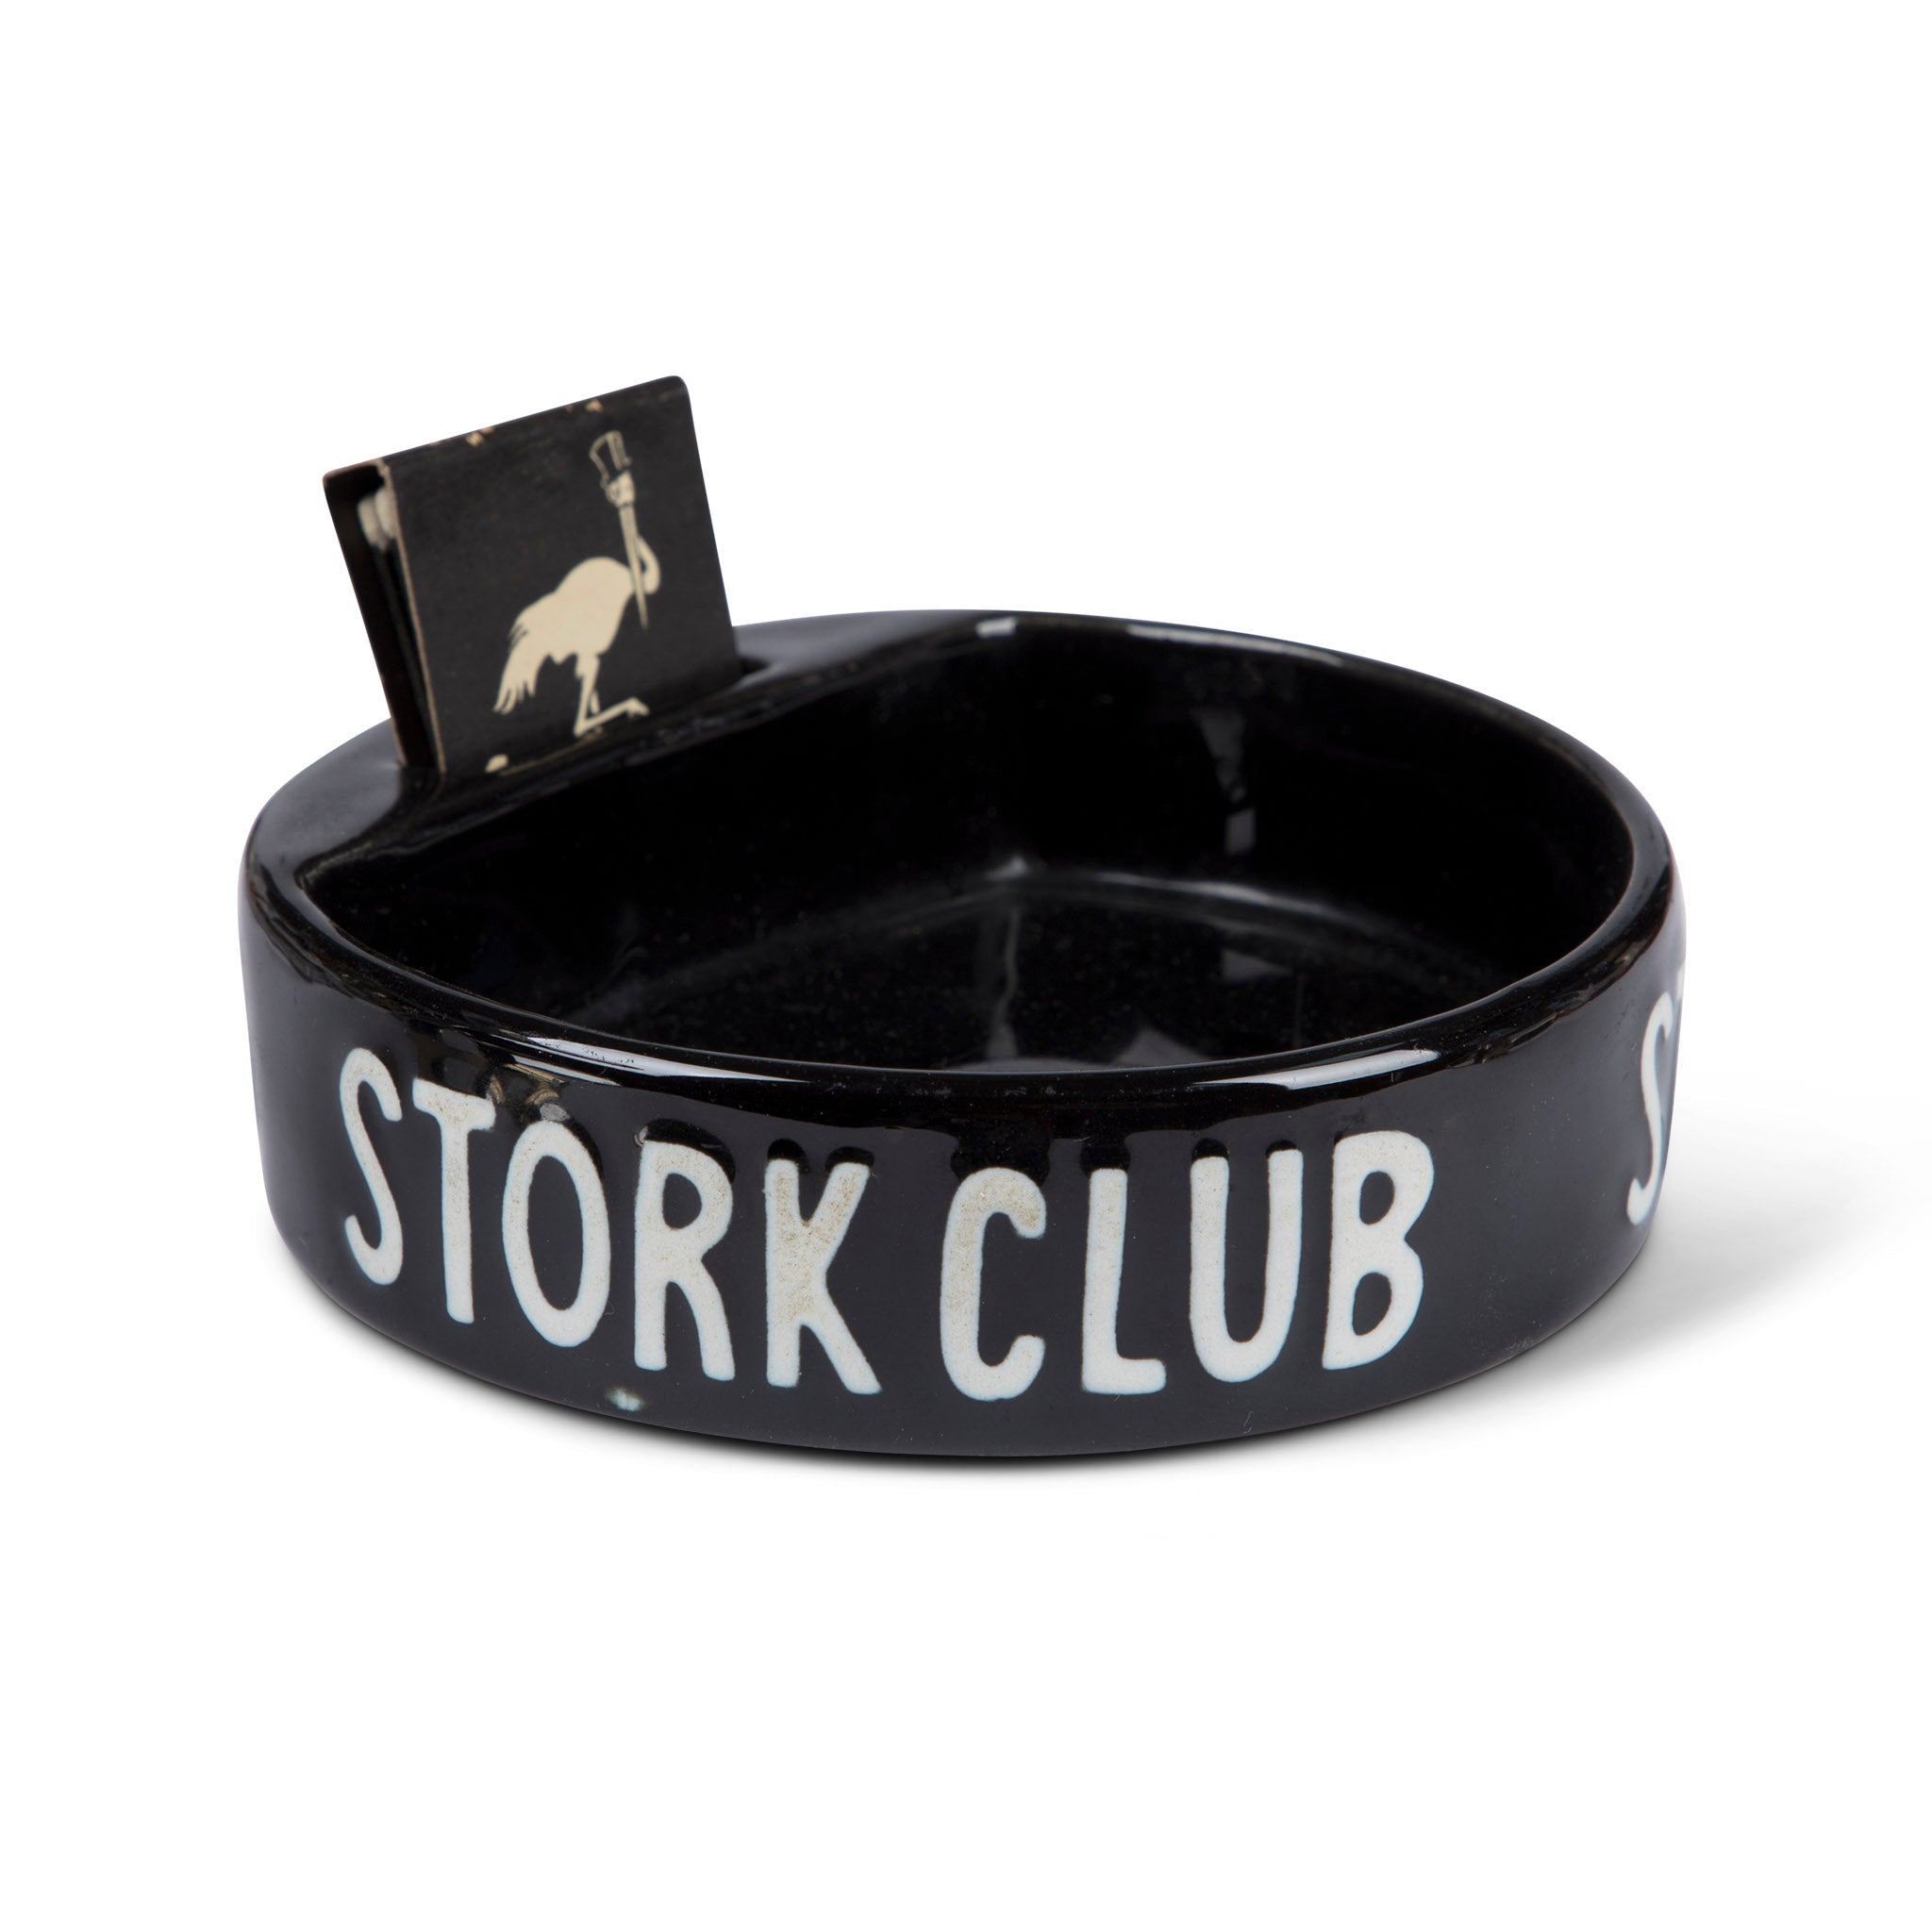 Stork Club Black Ceramic Ashtray & Match Holder